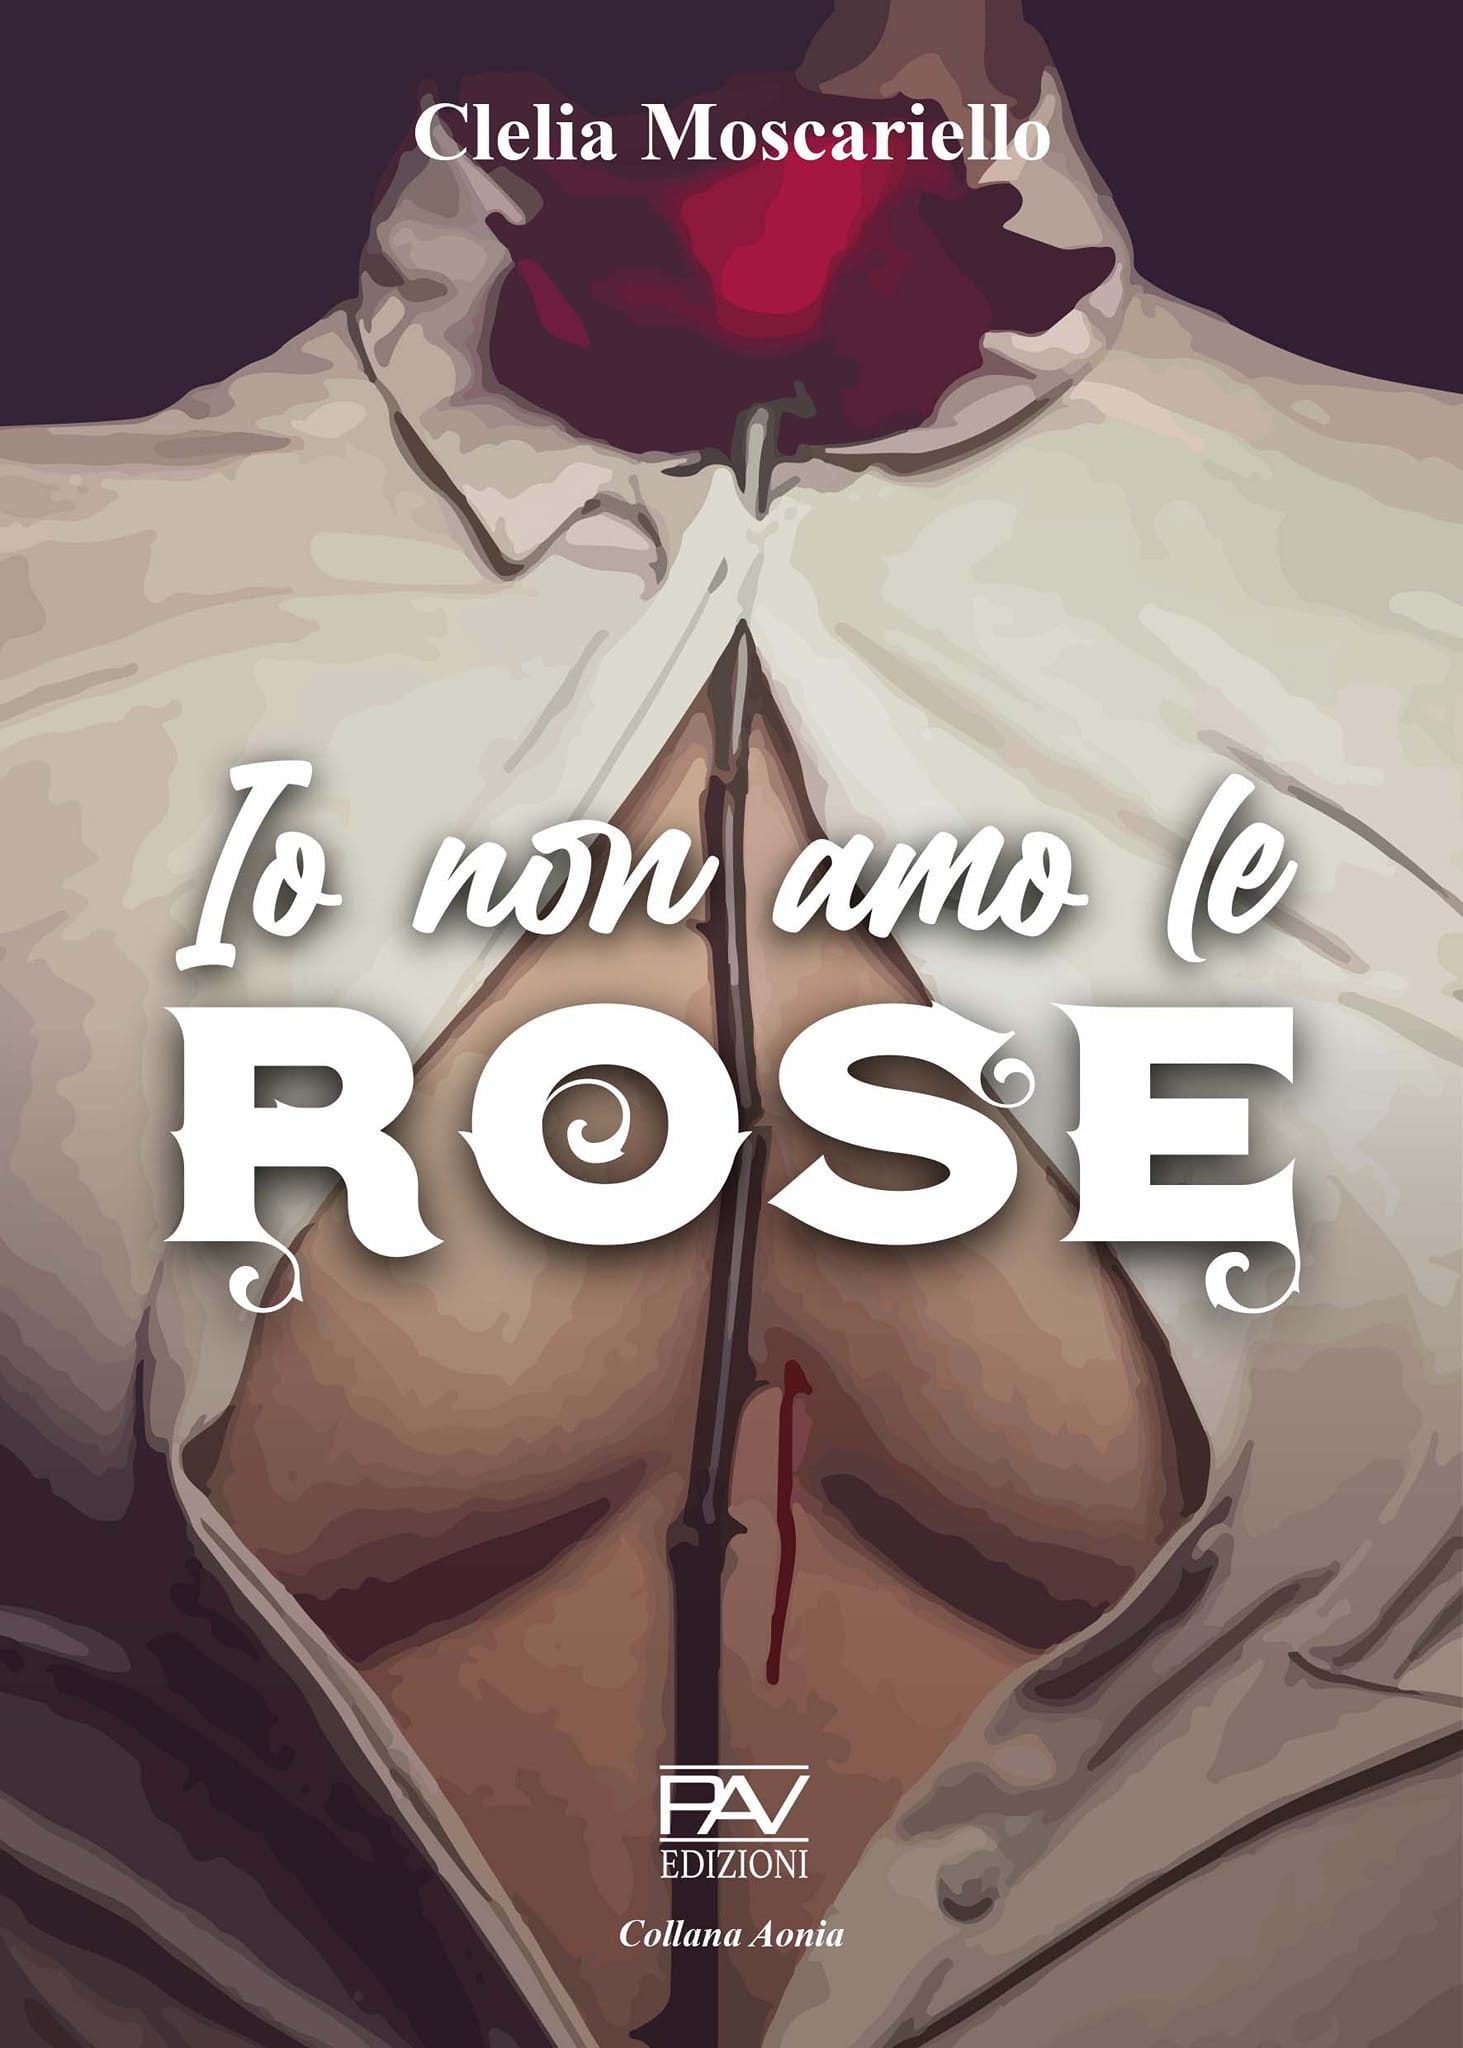 Clelia Moscariello autrice del libro “Io non amo le rose”(Pav edizioni): Sarò premiata al “concorso di poesia Leandro Polverini” il 27 novembre